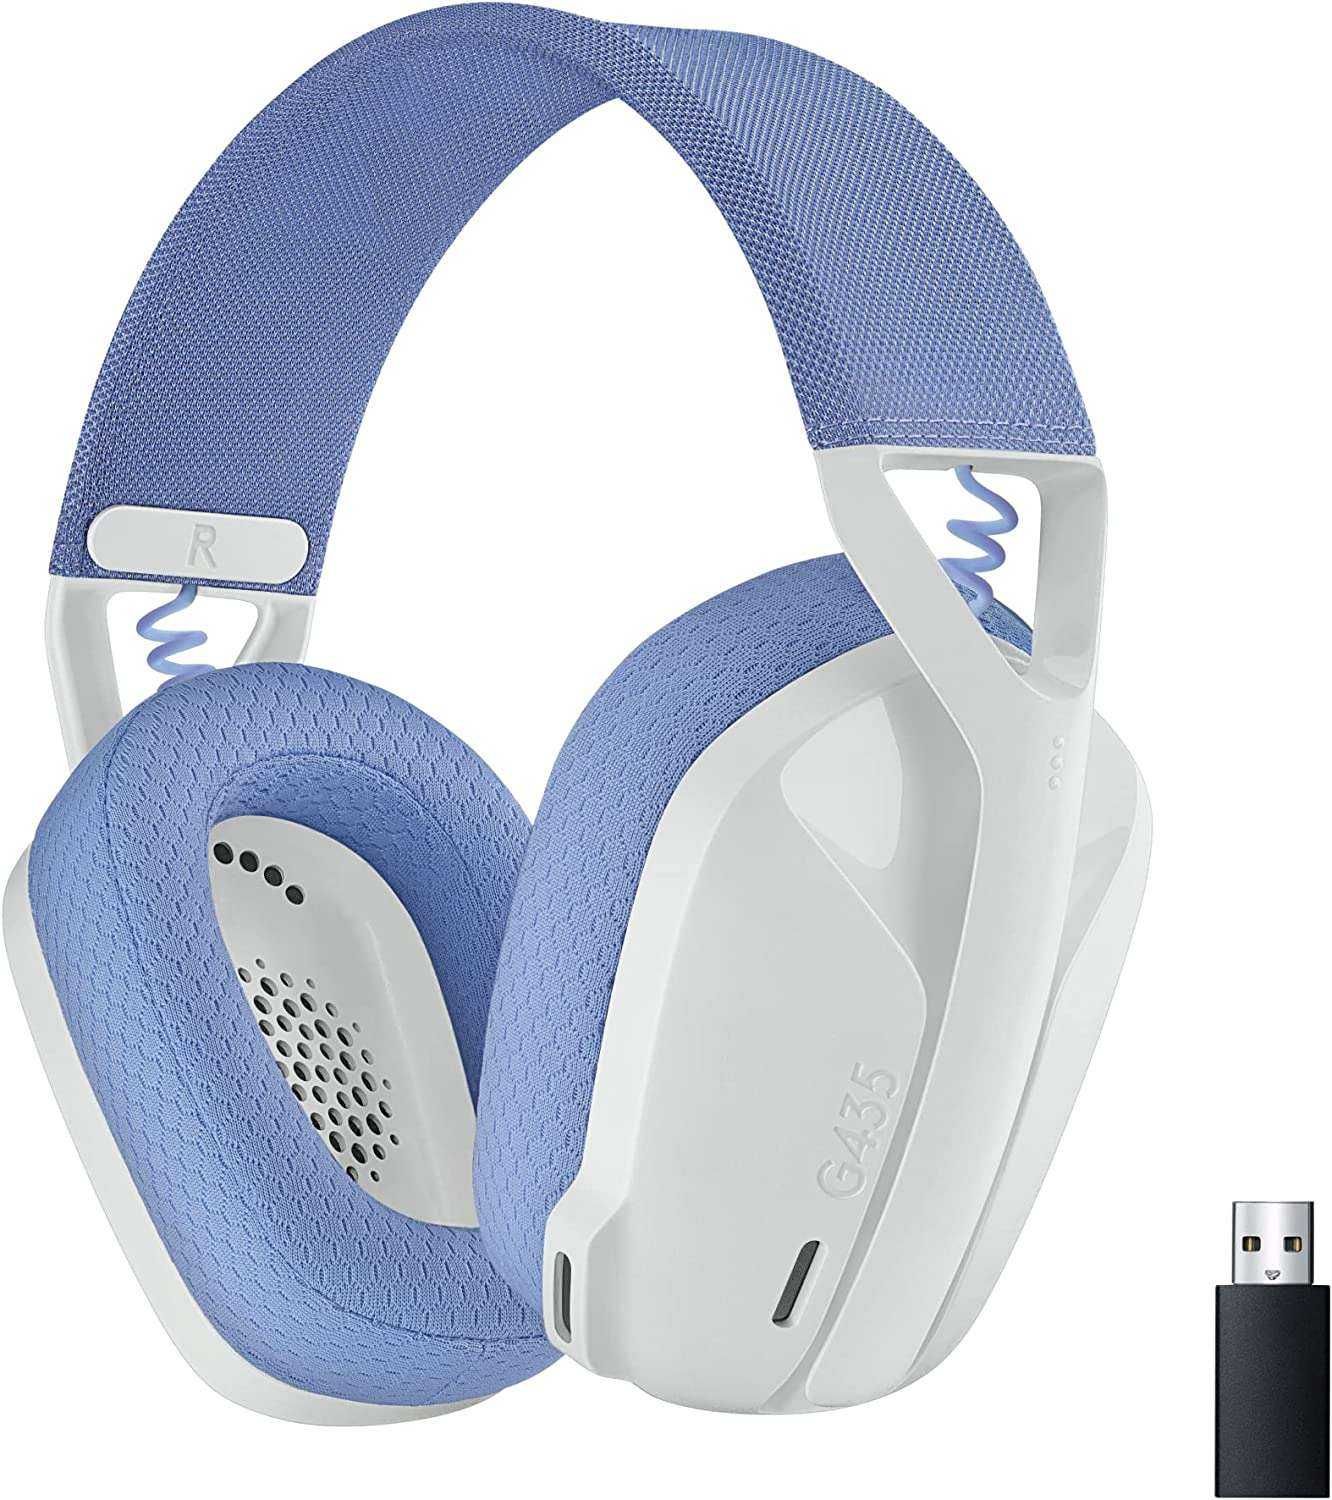 NOWE słuchawki bezprzewodowe Bluetooth Logitech G435 LIGHTSPEED